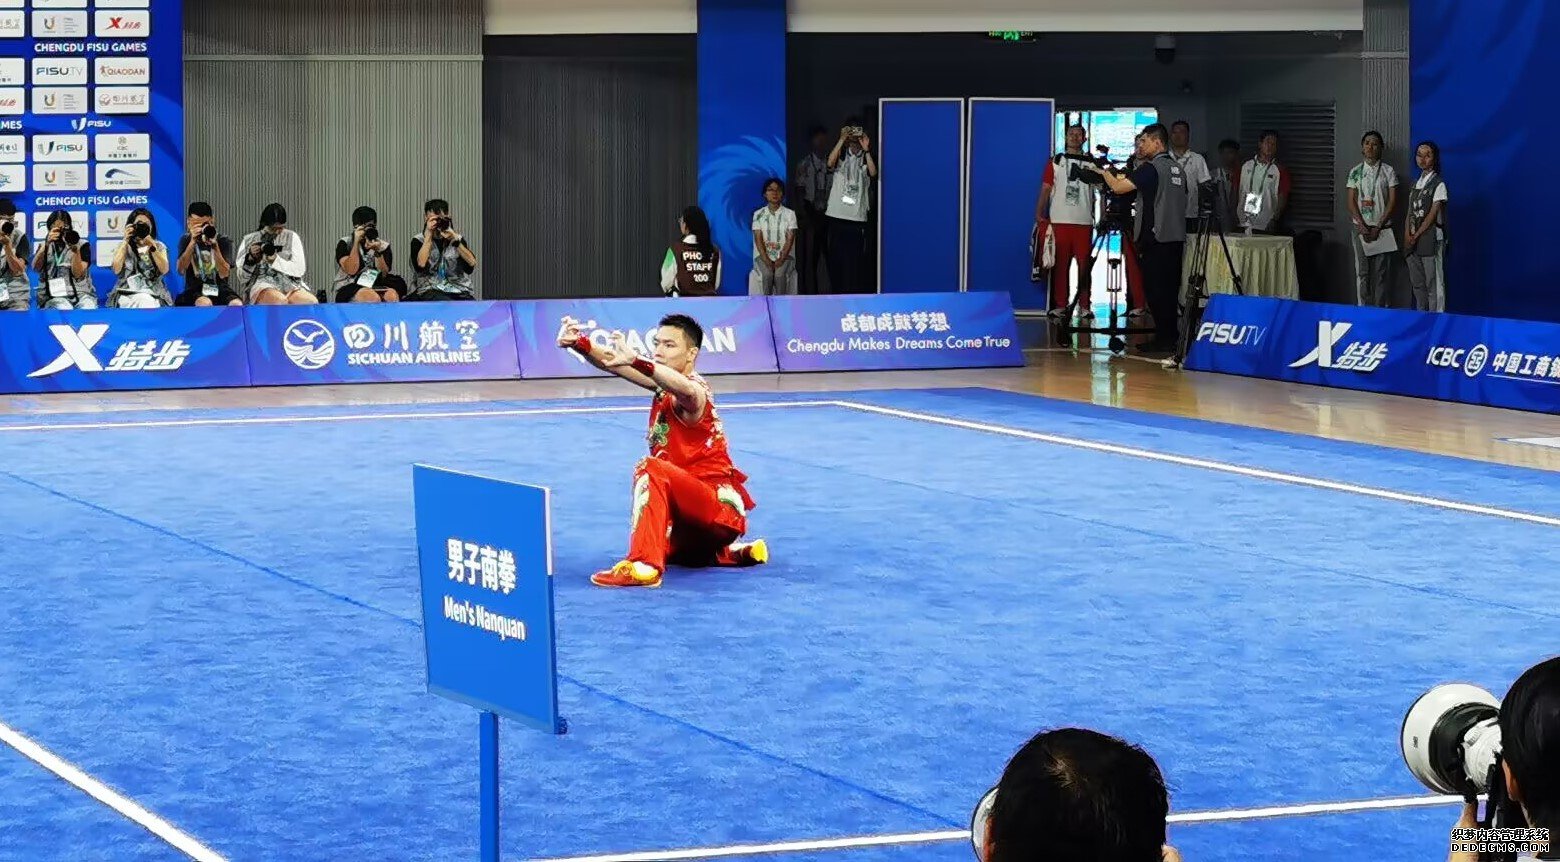 曹茂园在成都大运会武术项目男子南拳比赛中。 人民网记者 杨磊摄